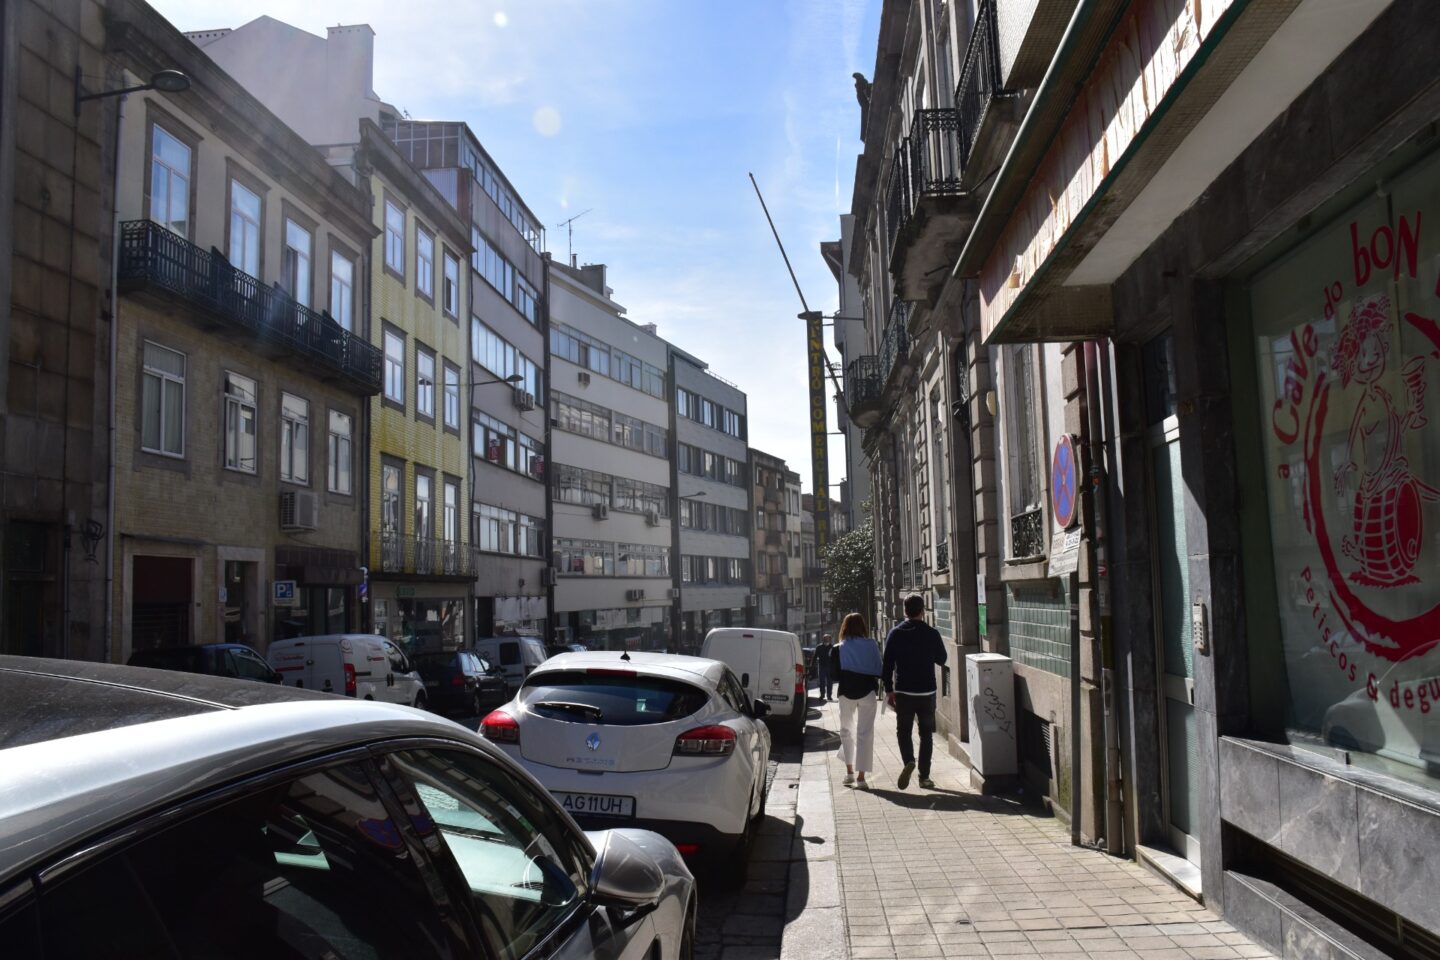 Café encerrado na baixa do Porto devido a desacatos constantes. “Ao fim de semana, era um pandemónio”